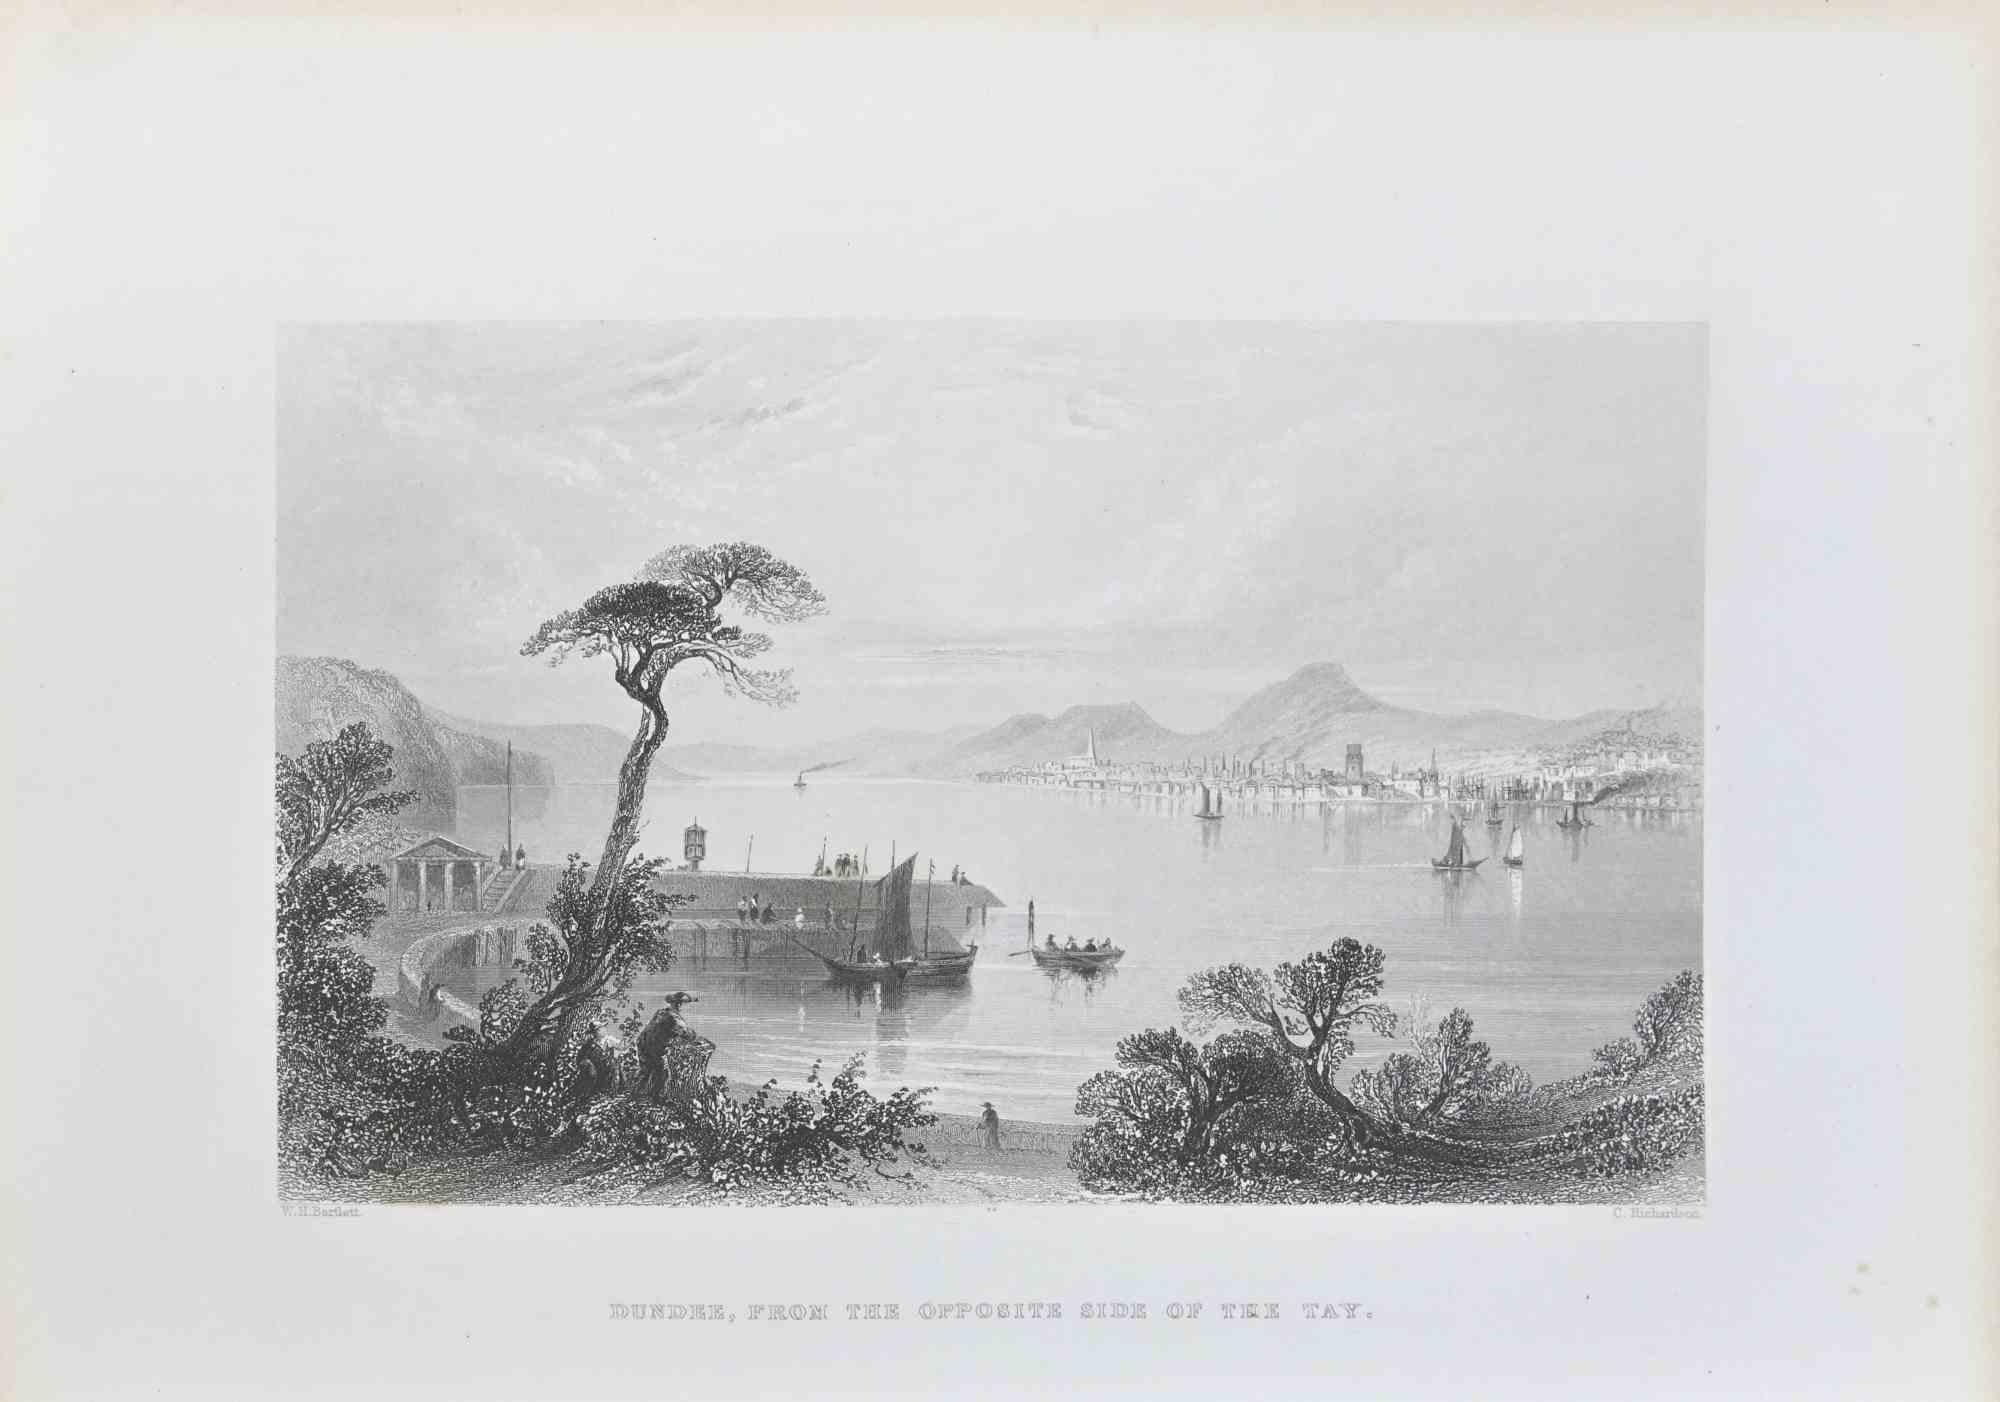 Dundee, desde la orilla opuesta del Tay Por W.H. Bartlett - Siglo XIX